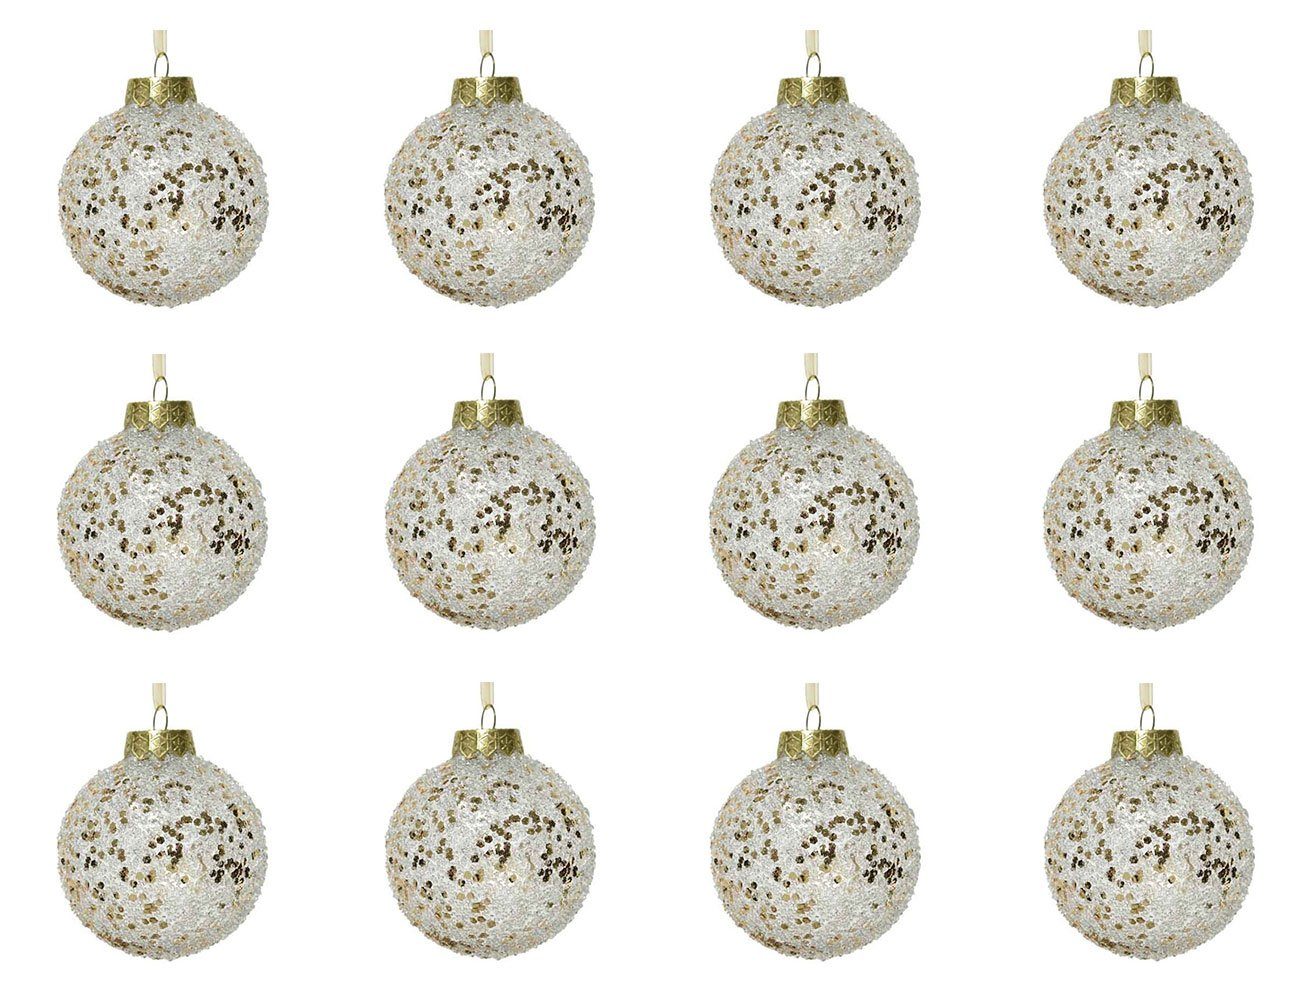 Kunststoff decorations Weihnachtskugeln mit transparent 8cm Christbaumschmuck, Glitzer gold, 12er season Set Decoris